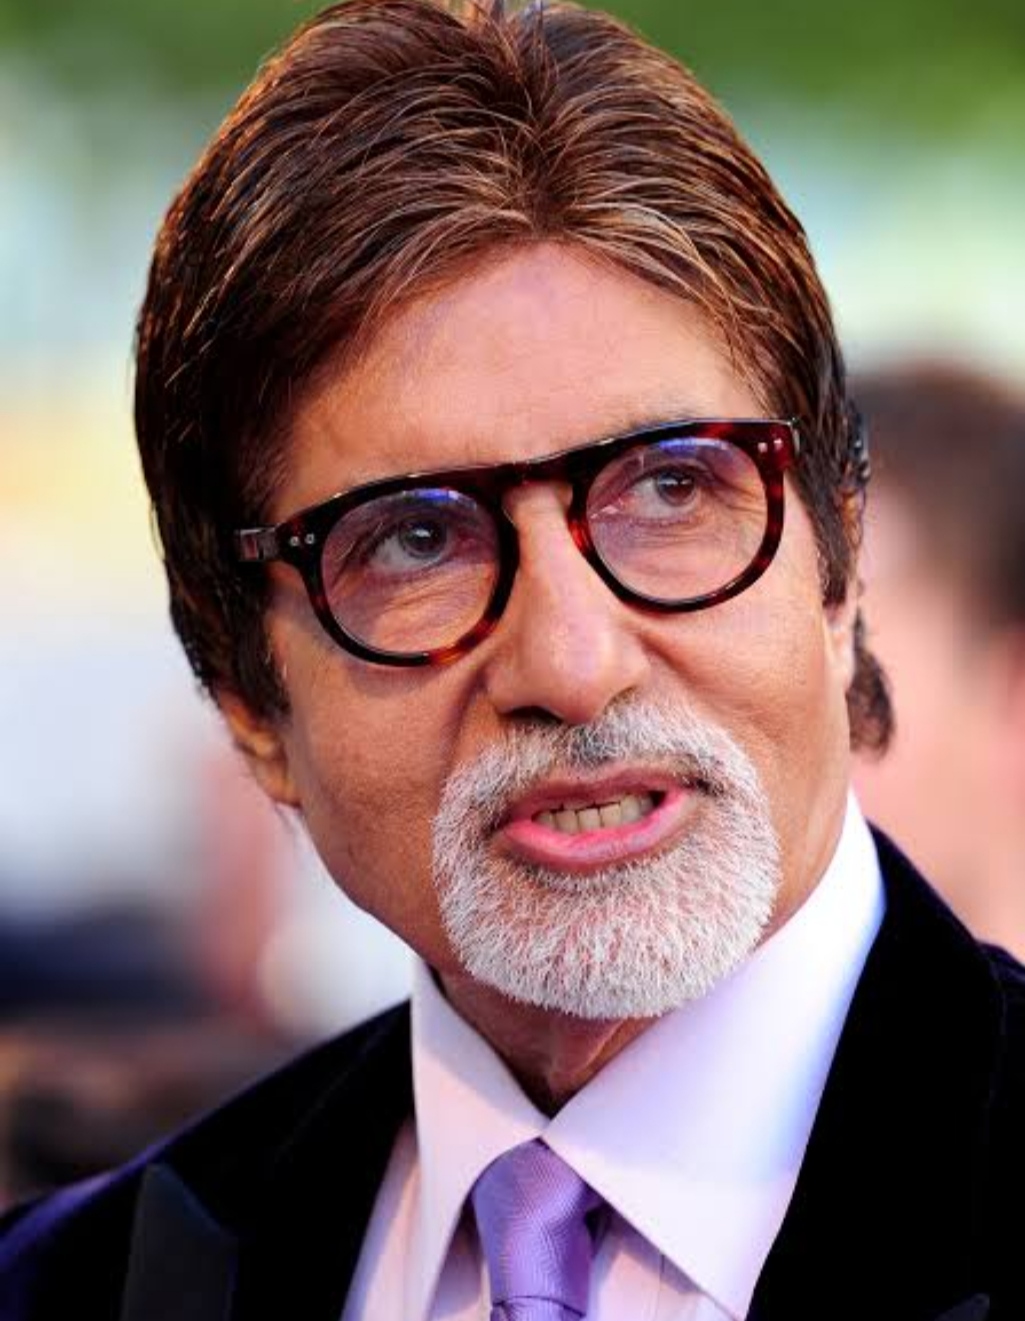 अमिताभ बच्चन राजनीति करियर में क्यों नहीं जमा पाए अपनी पैठ